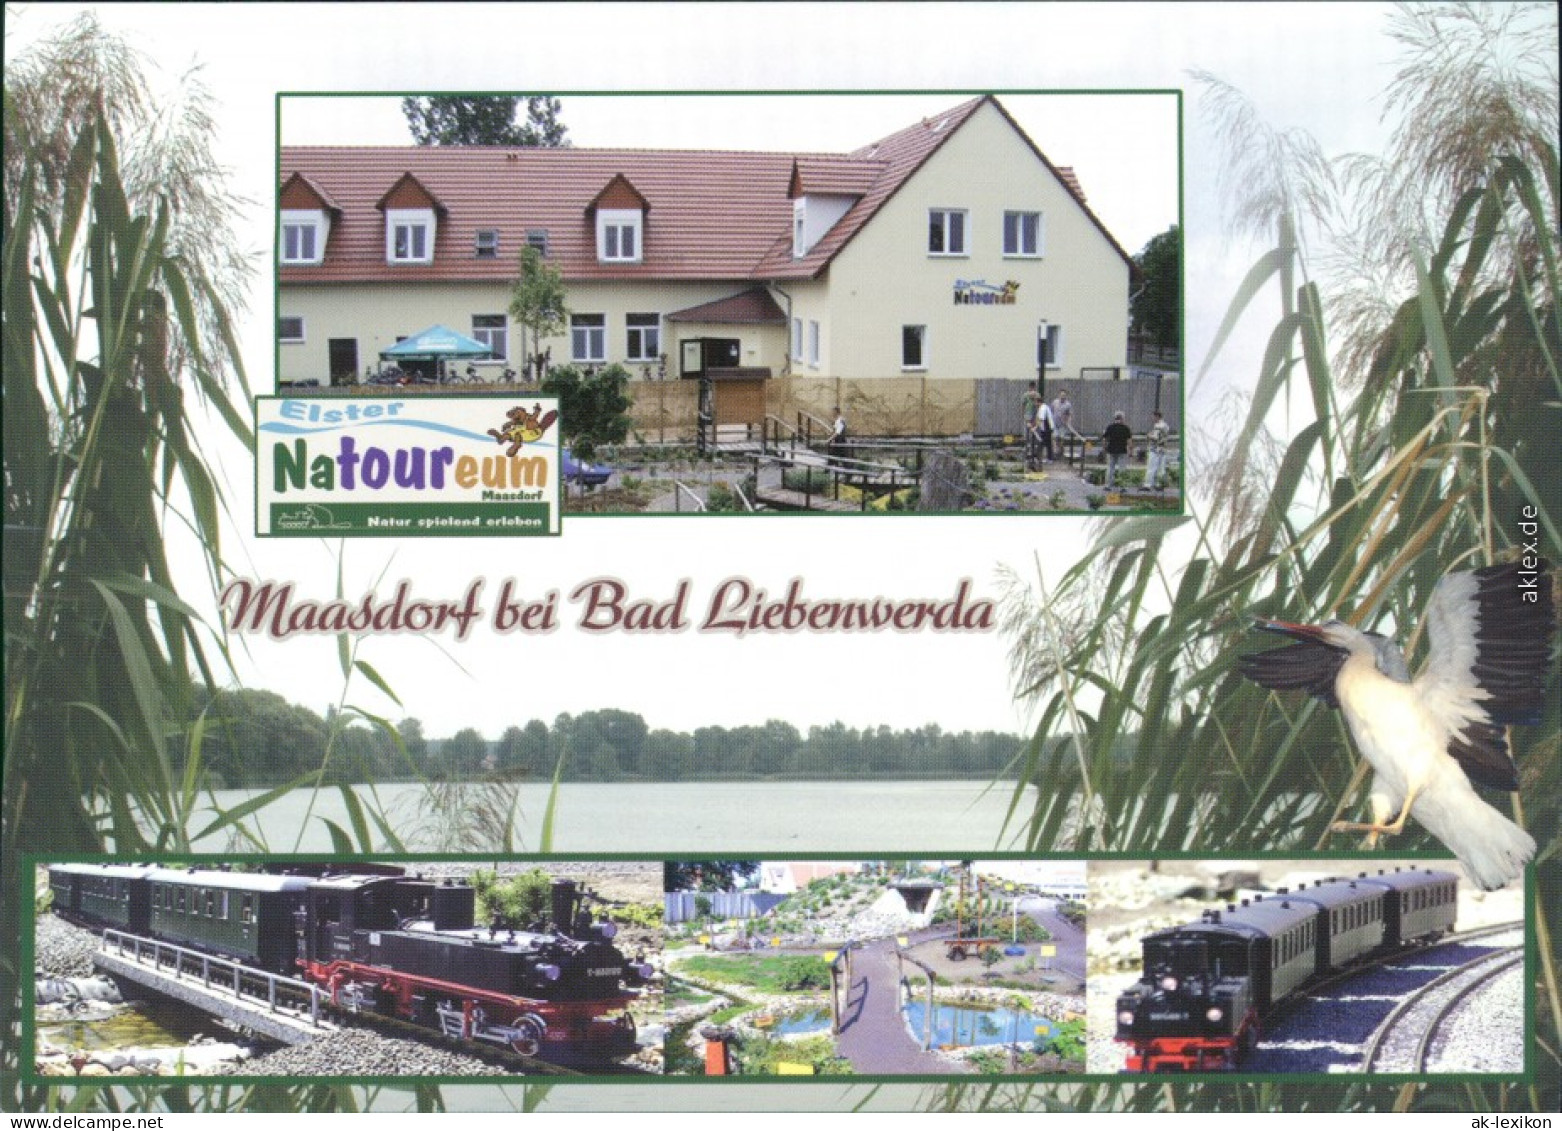 Ansichtskarte Bad Liebenwerda Elster-Natoureum 2007 - Bad Liebenwerda